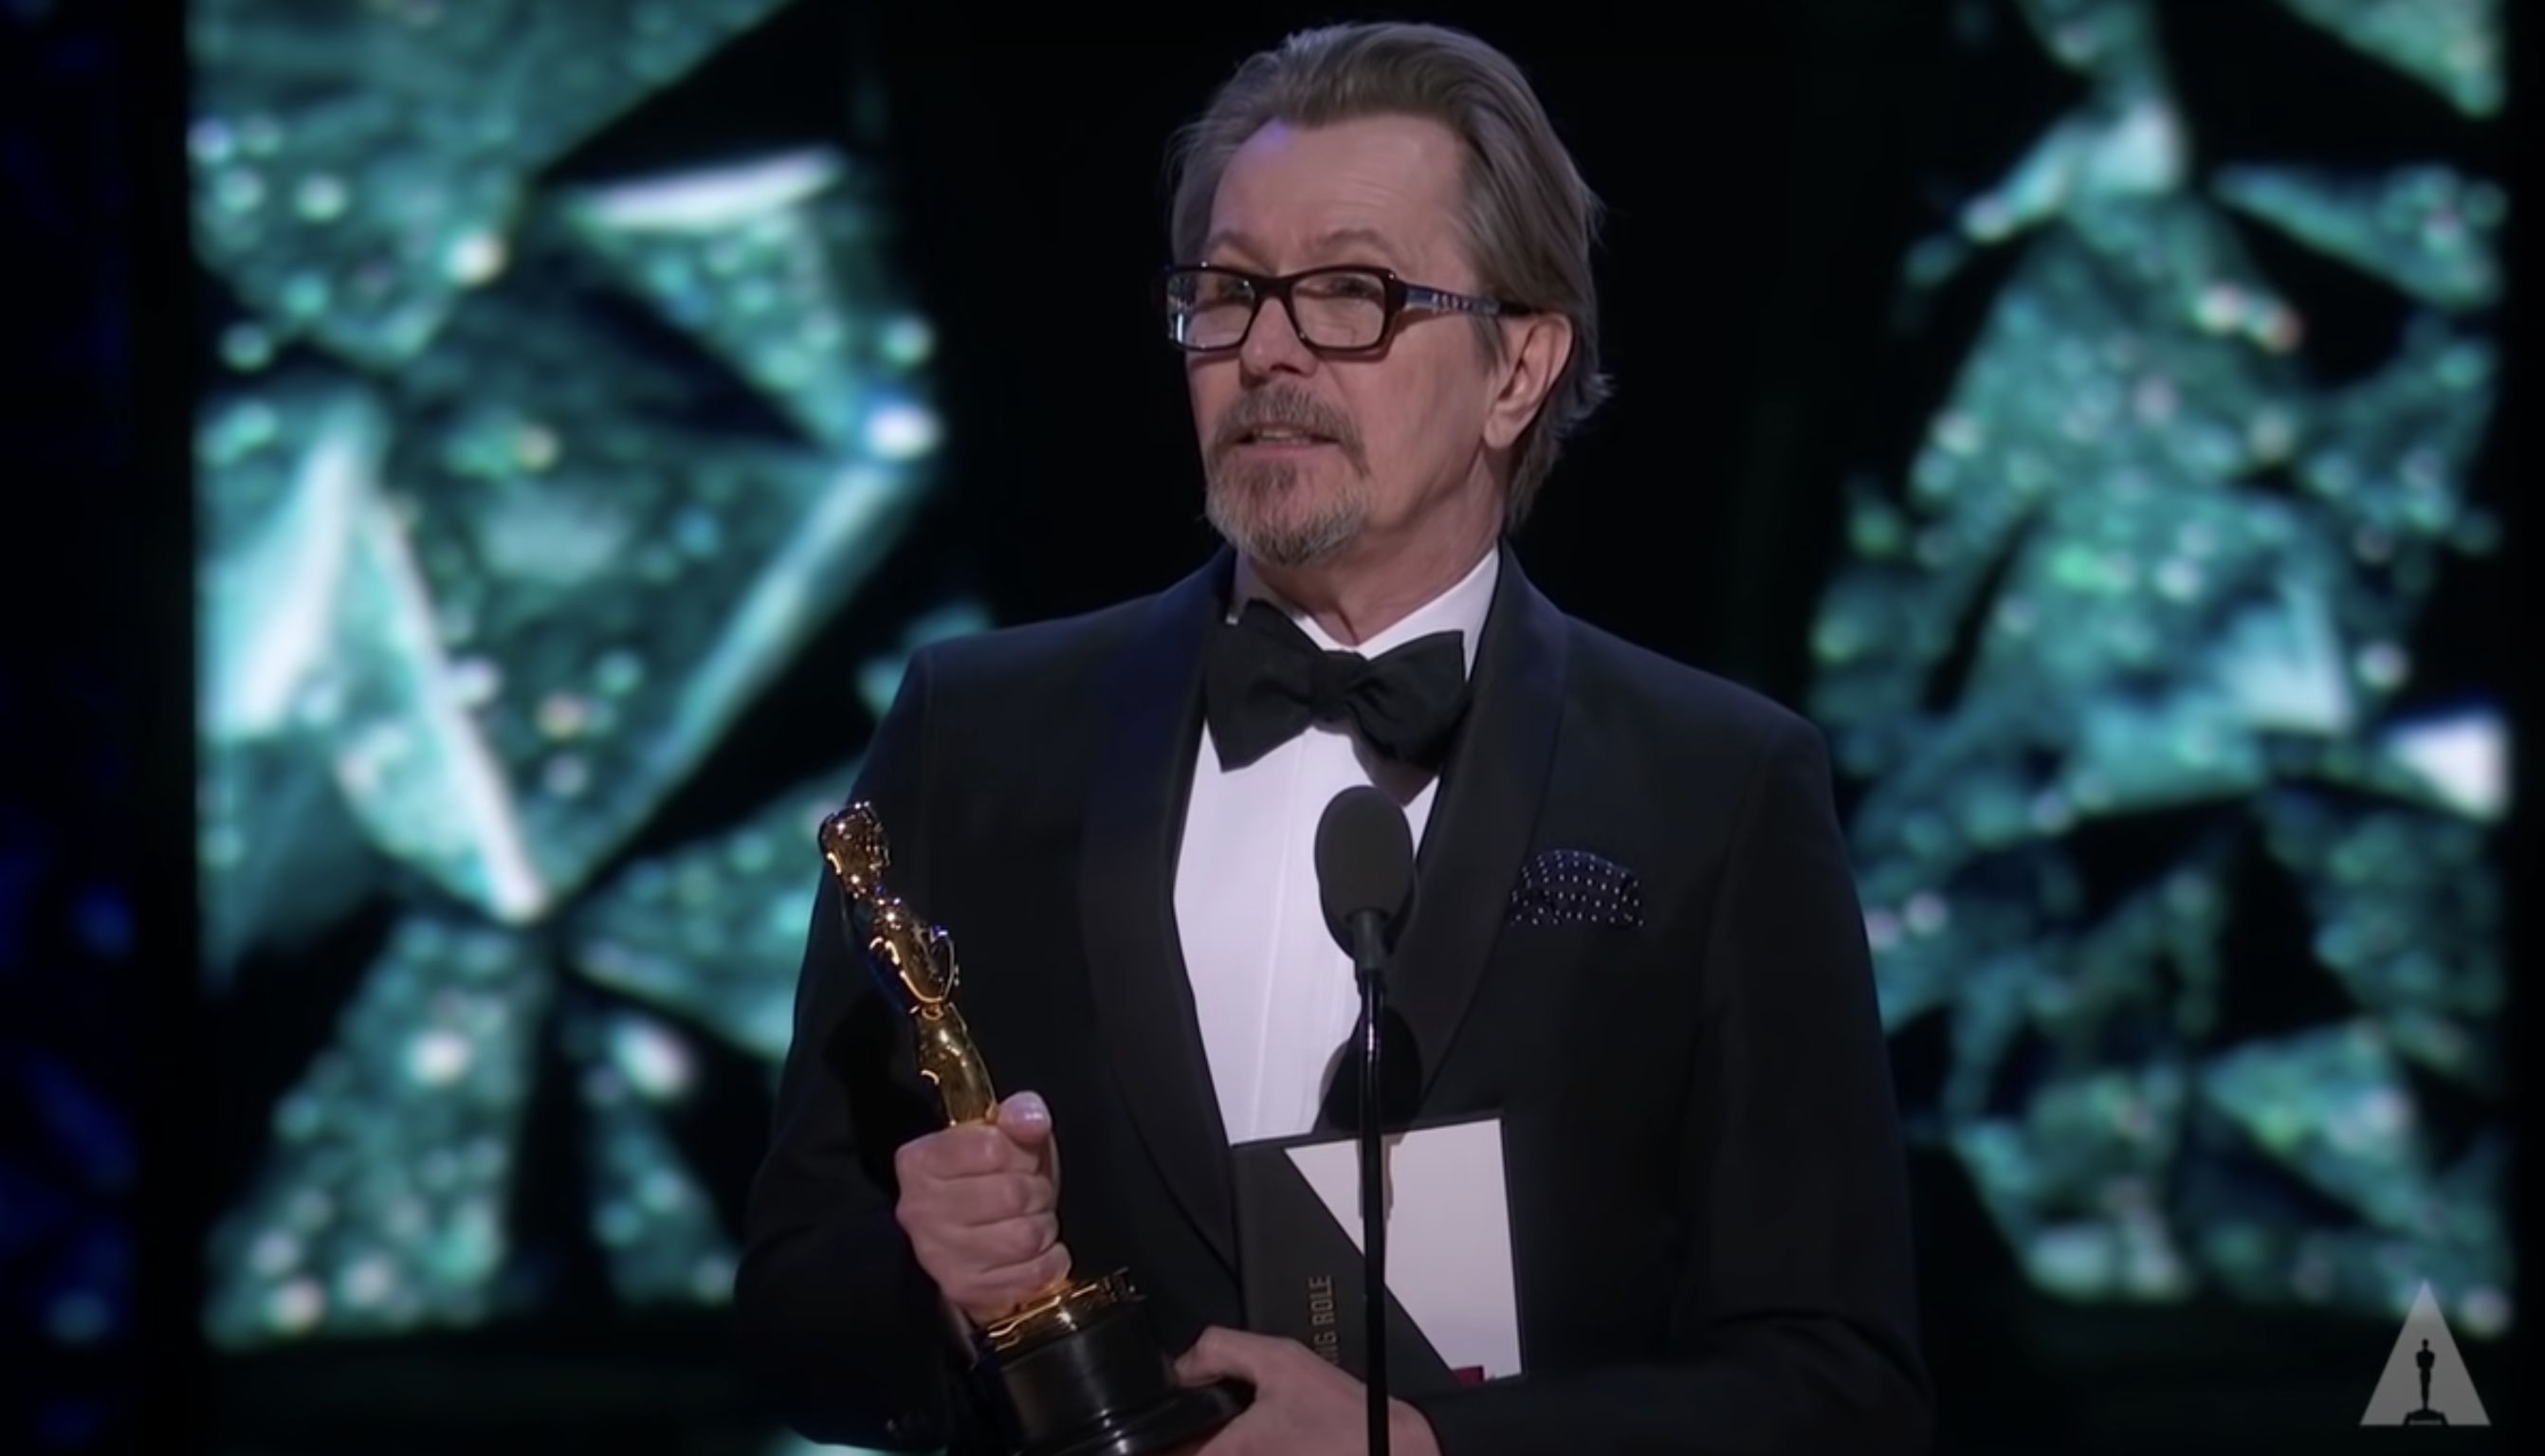 Gary accepting his Oscar